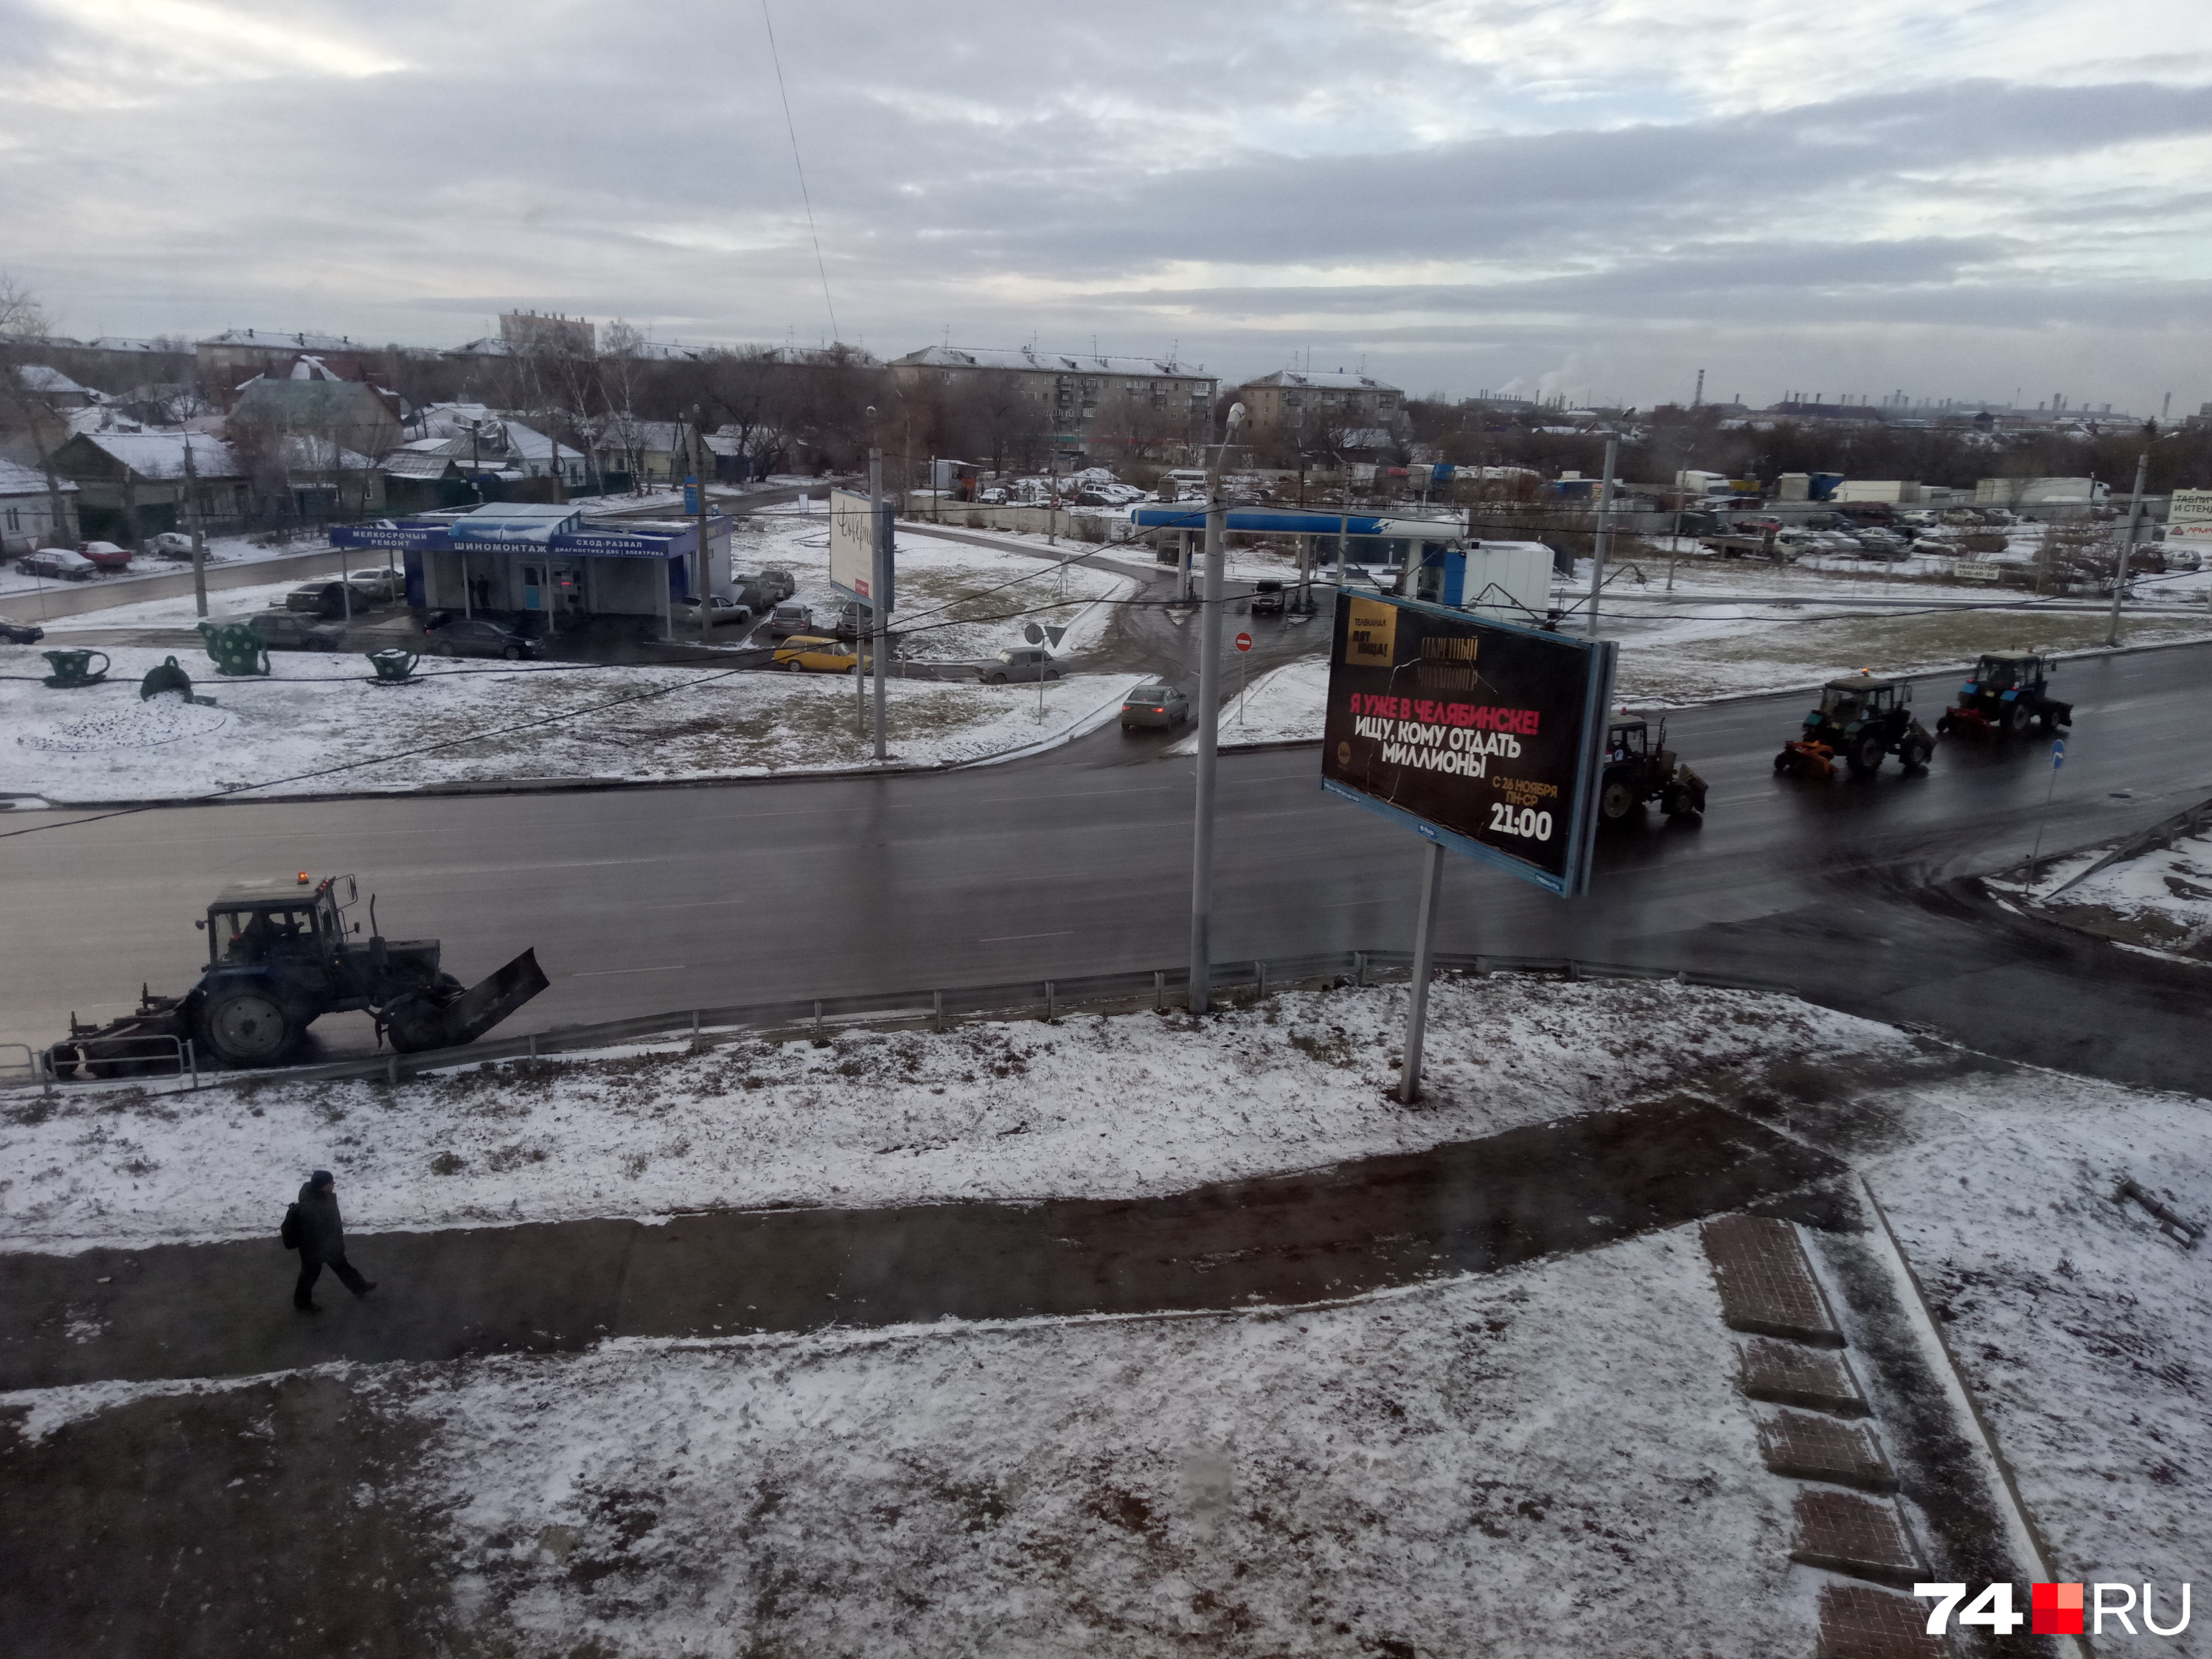 А это фото читатели 74.ru прислали днём 25 ноября с вопросом, что же именно с дорог счищает техника